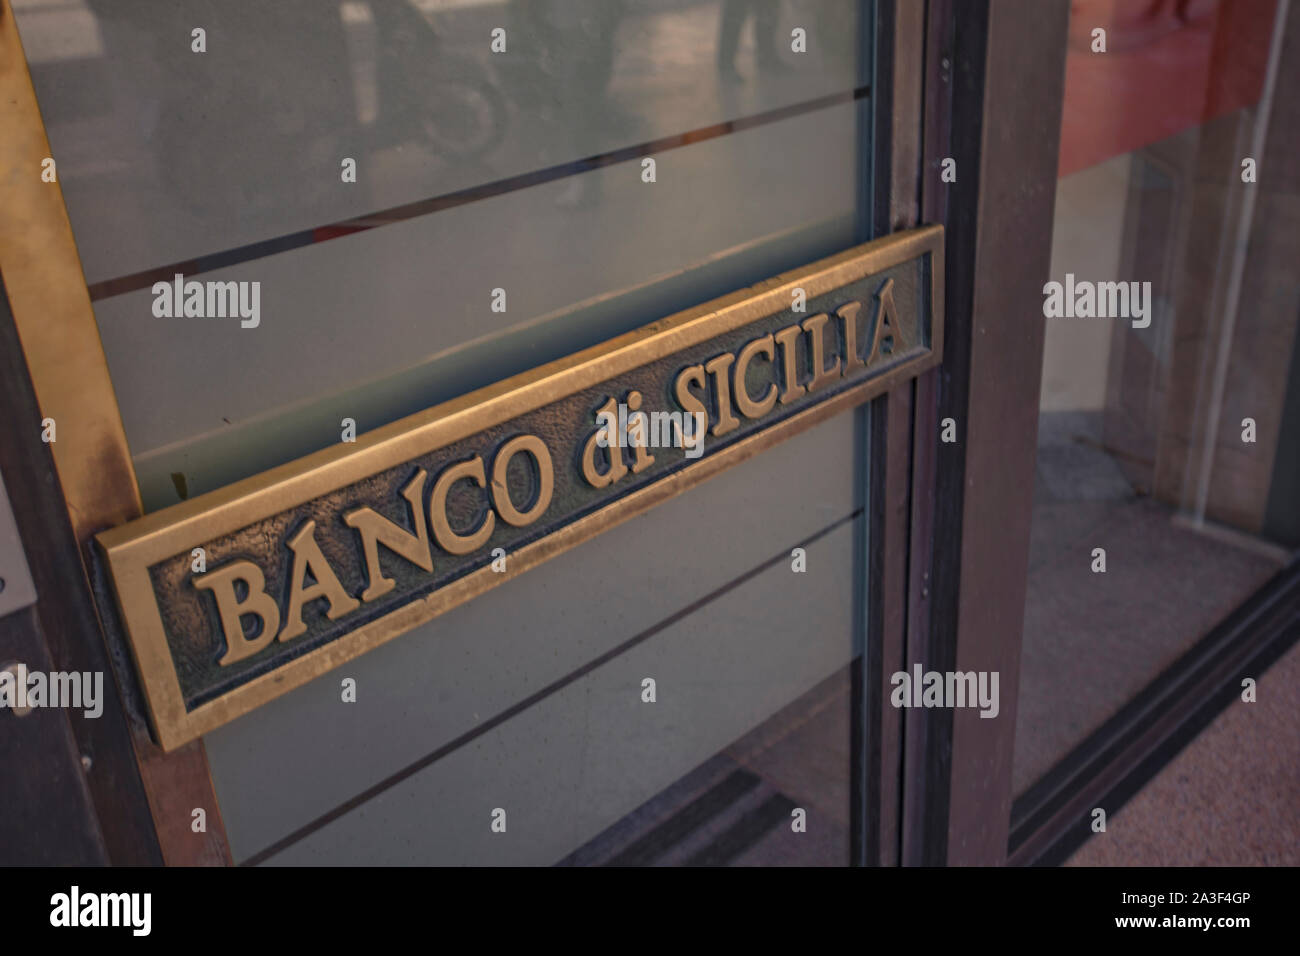 Banco di Sicilia Stock Photo